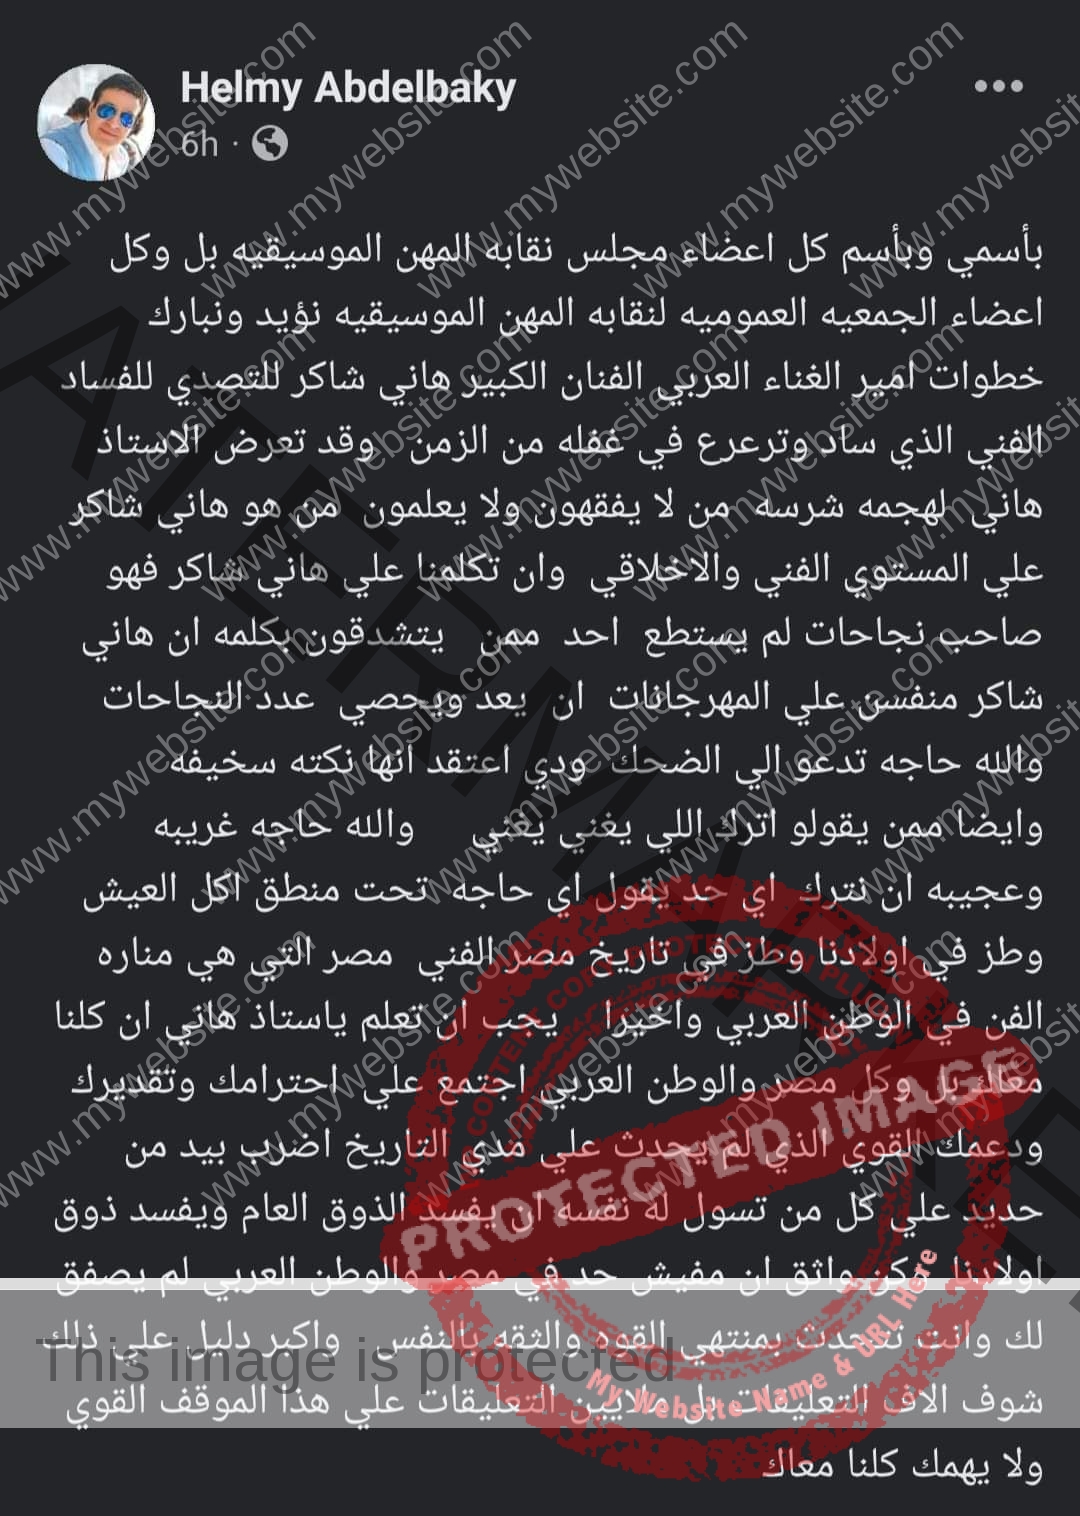 حلمي عبد الباقي يدعم هاني شاكر بعد أزمته الأخيرة "ولا يهمك كلنا معاك"